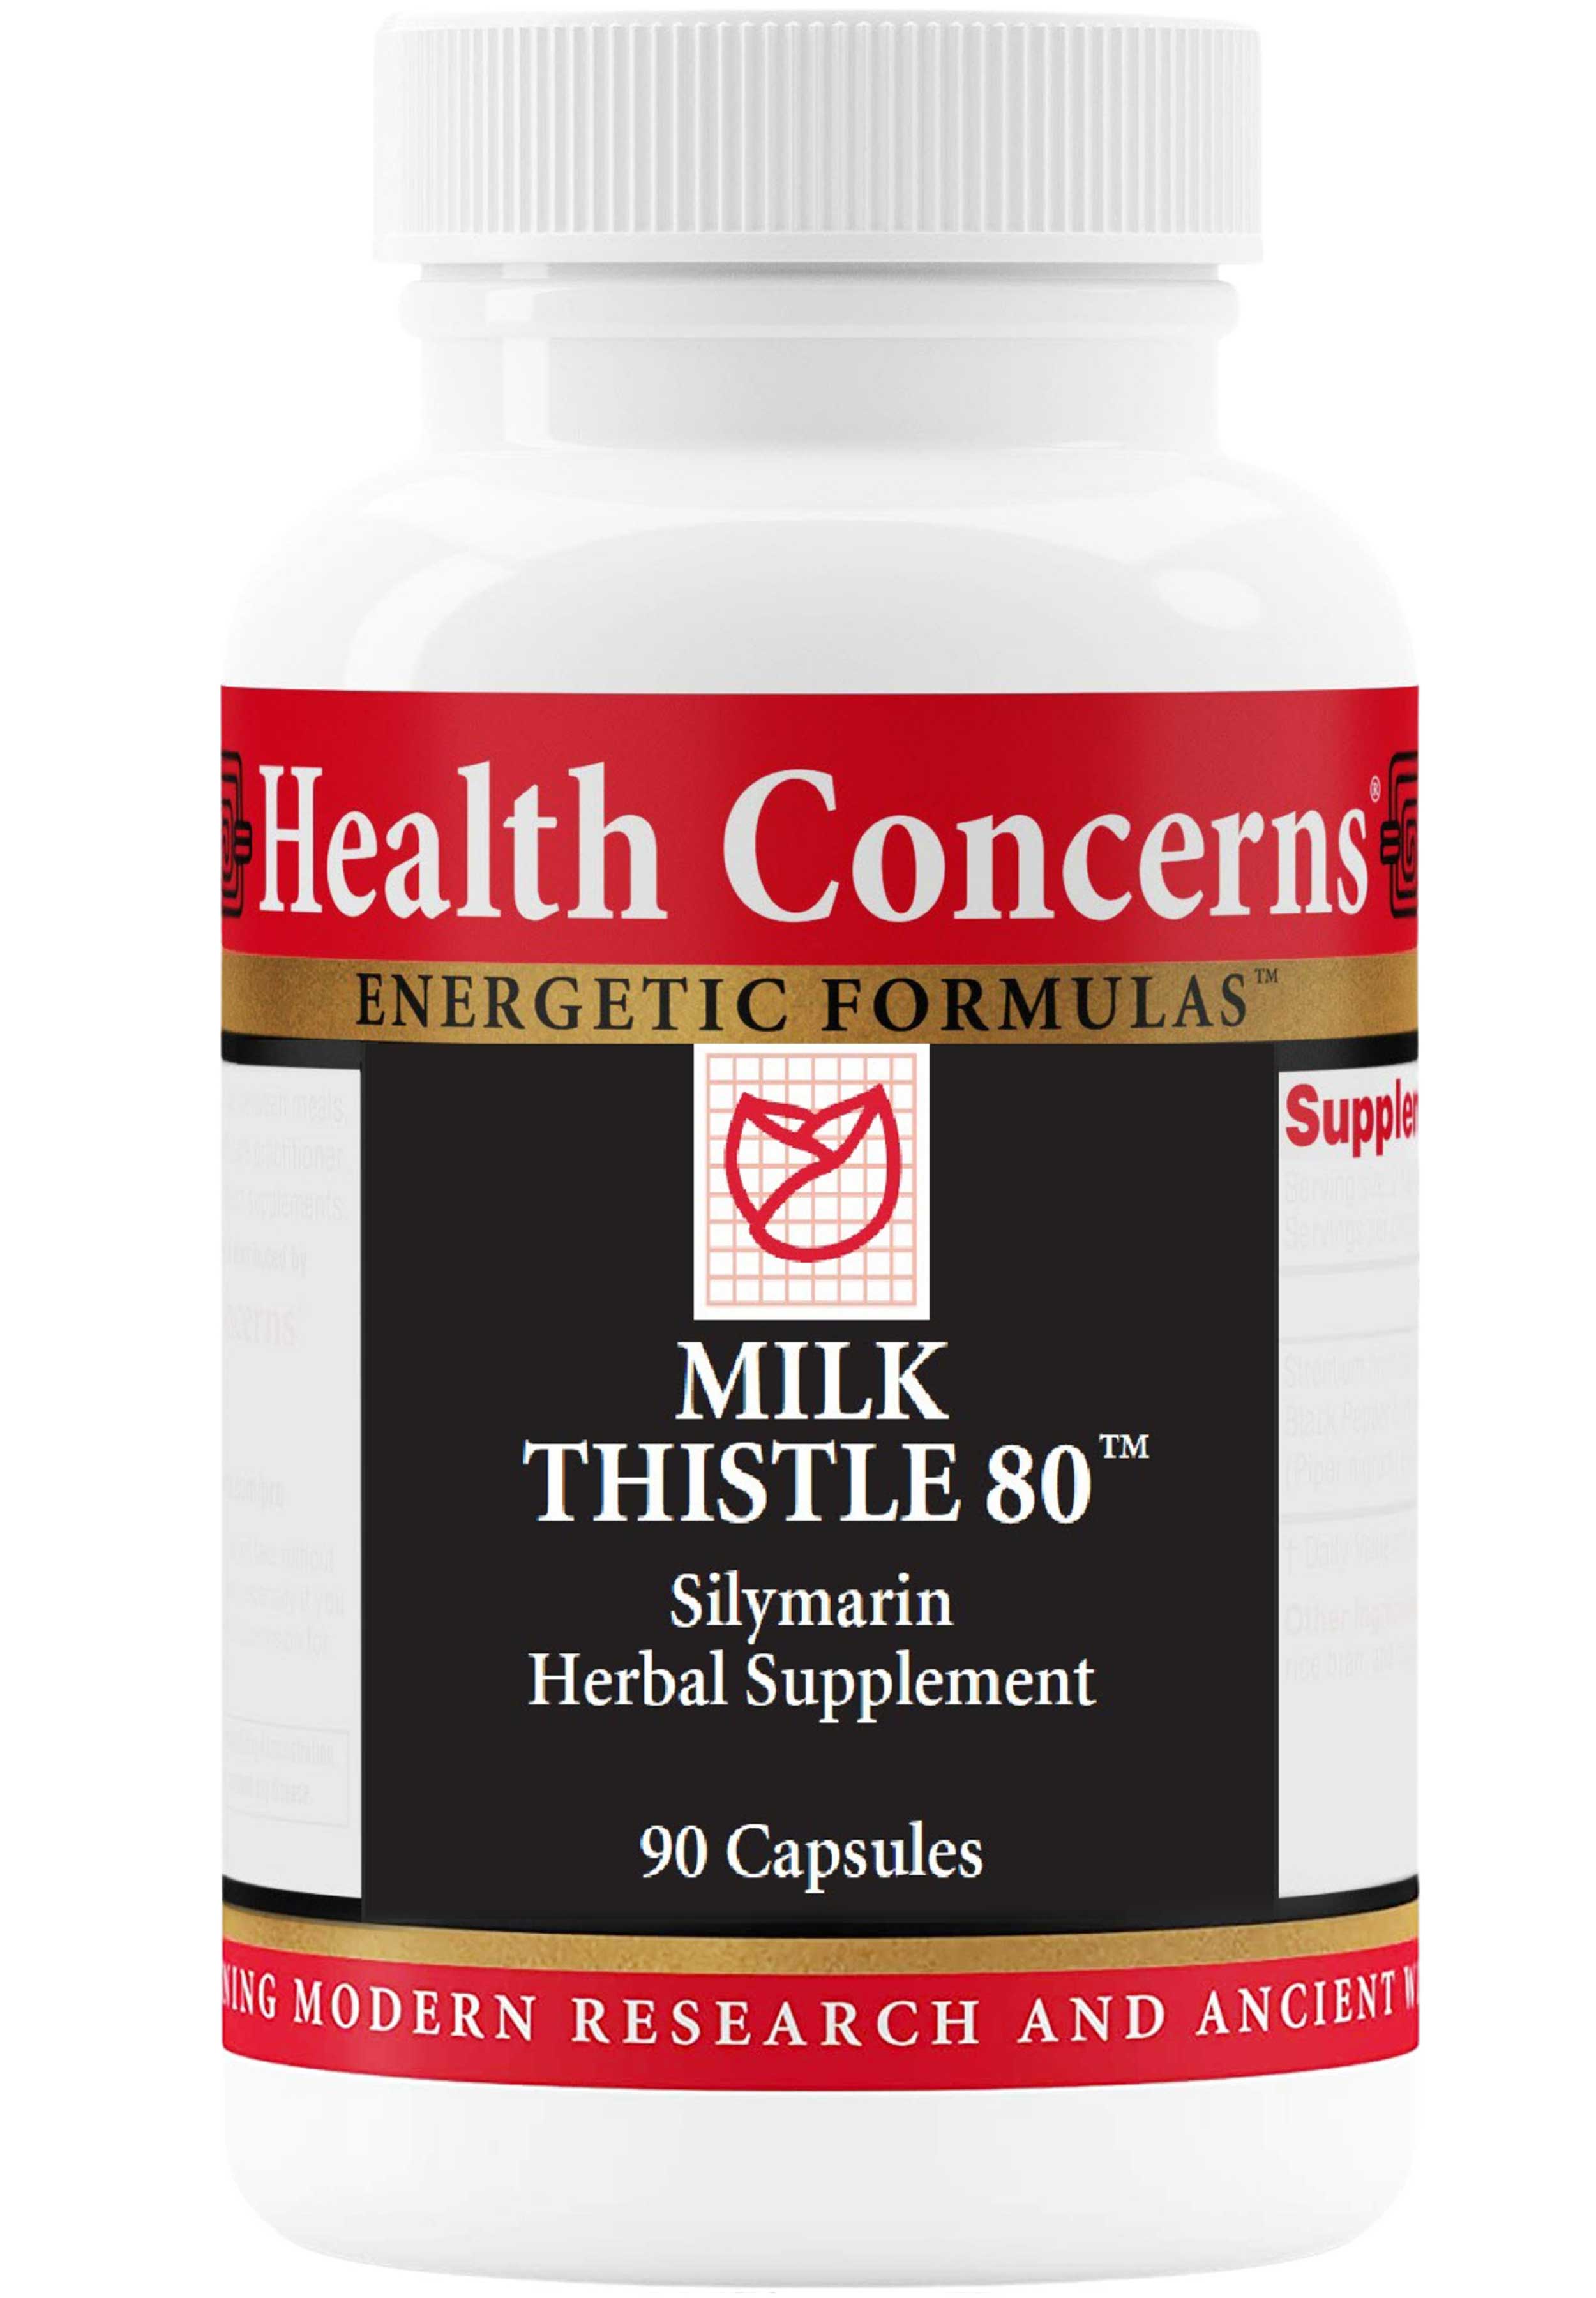 Health Concerns Milk Thistle 80